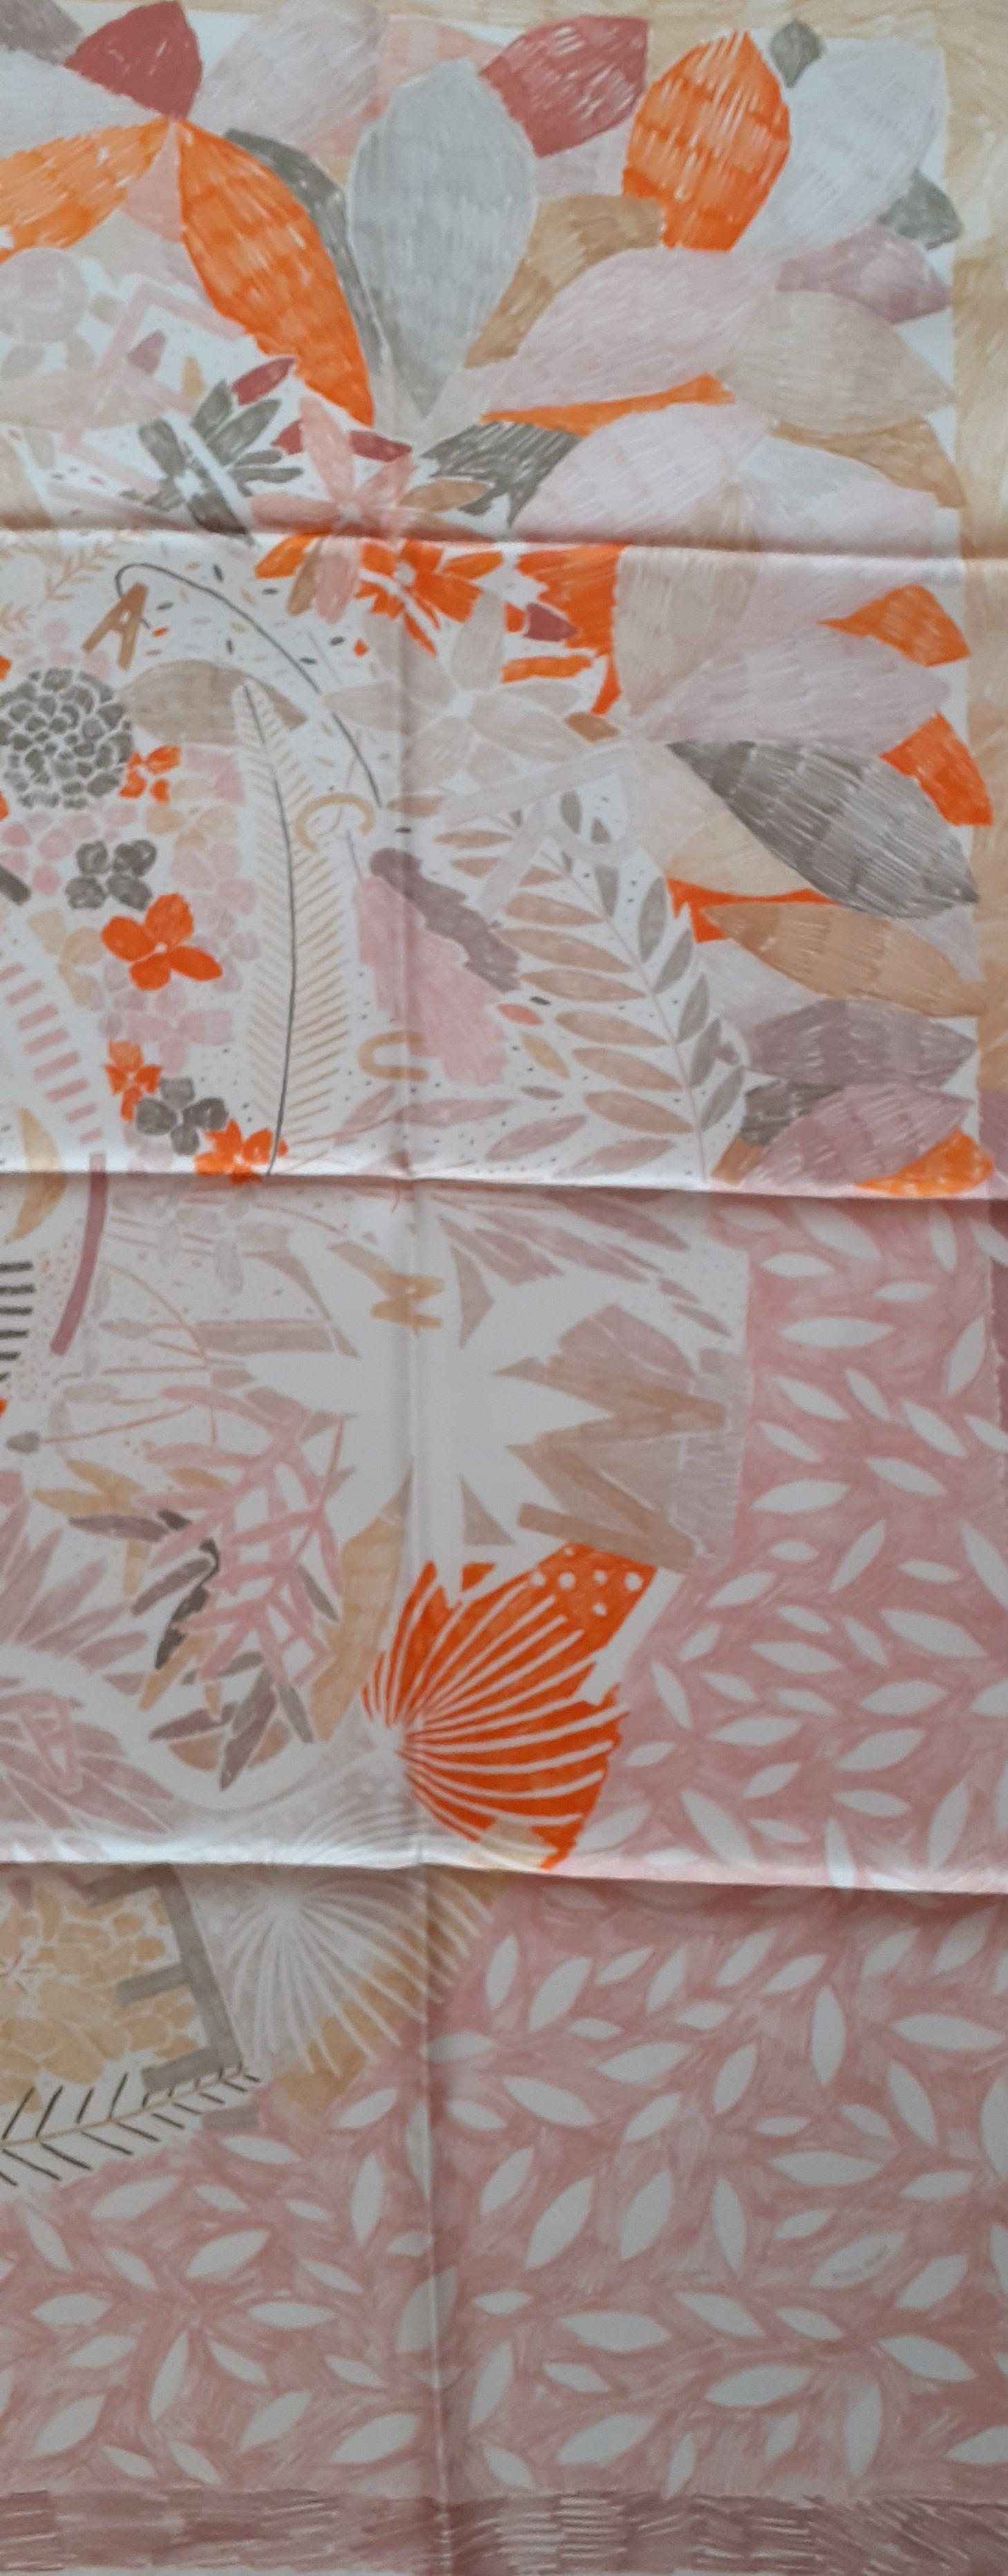 Absolut wunderschönes authentisches Hermès Tuch

Muster: 